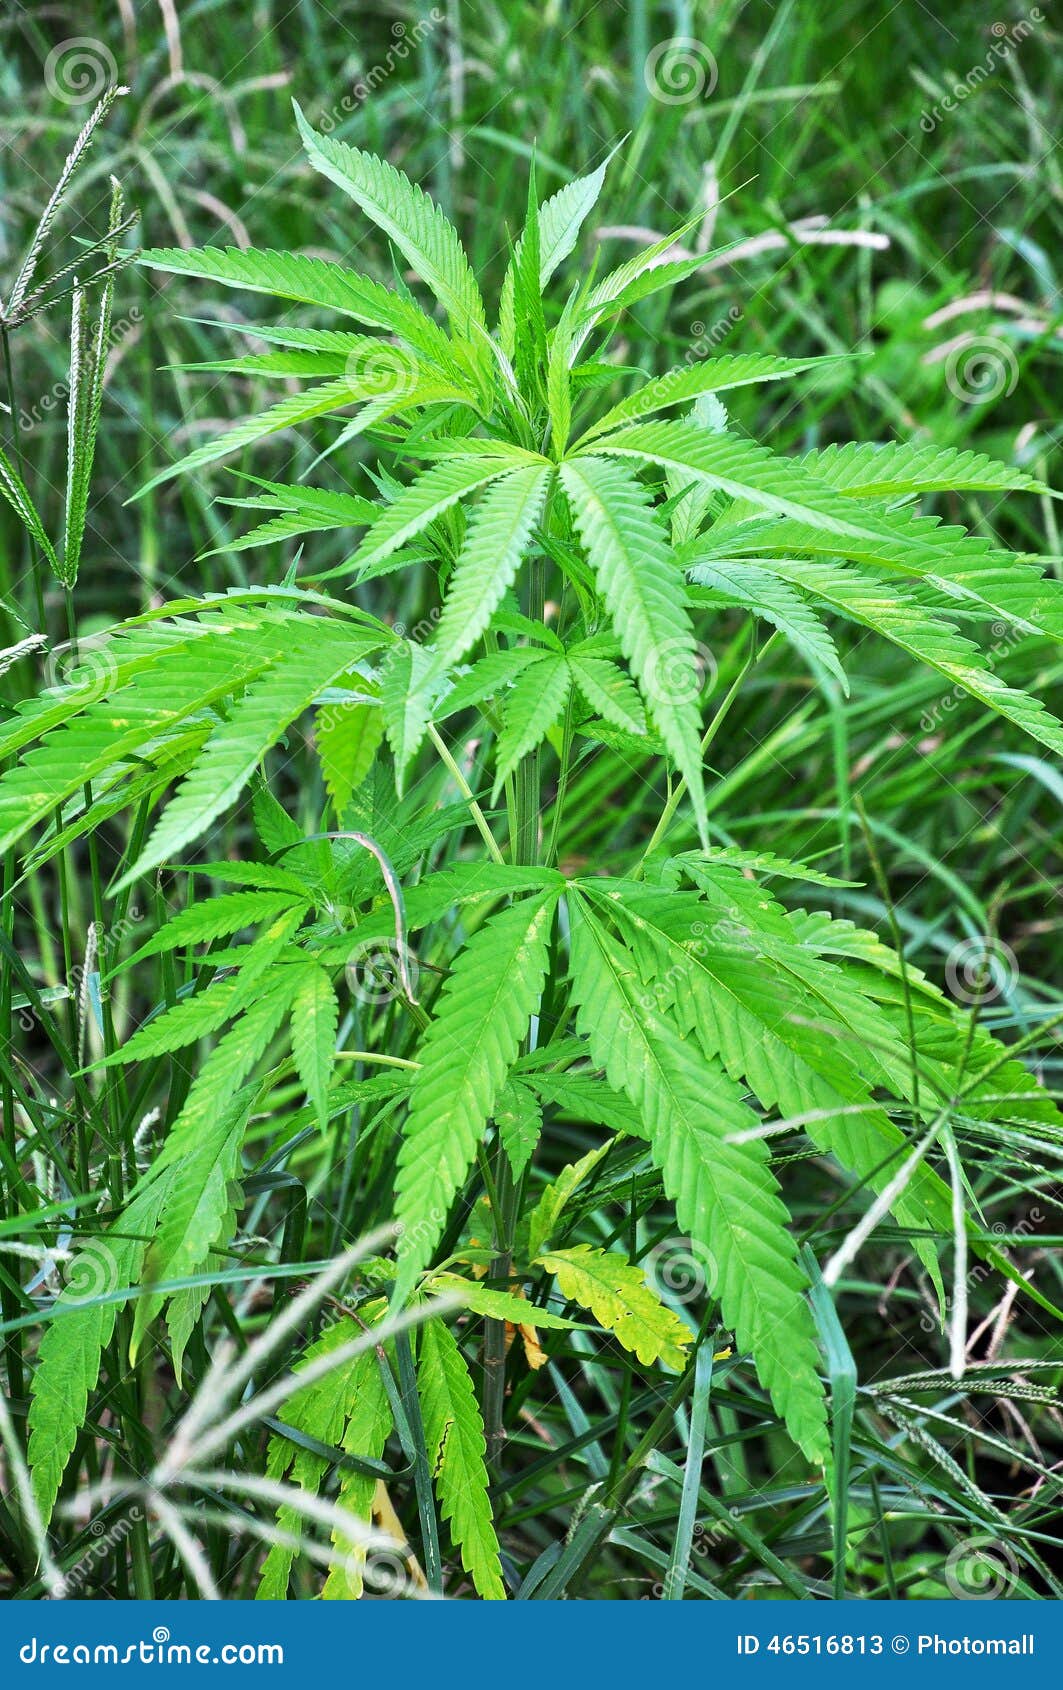 wild-hemp-plant-grass-wild-cannabis-46516813